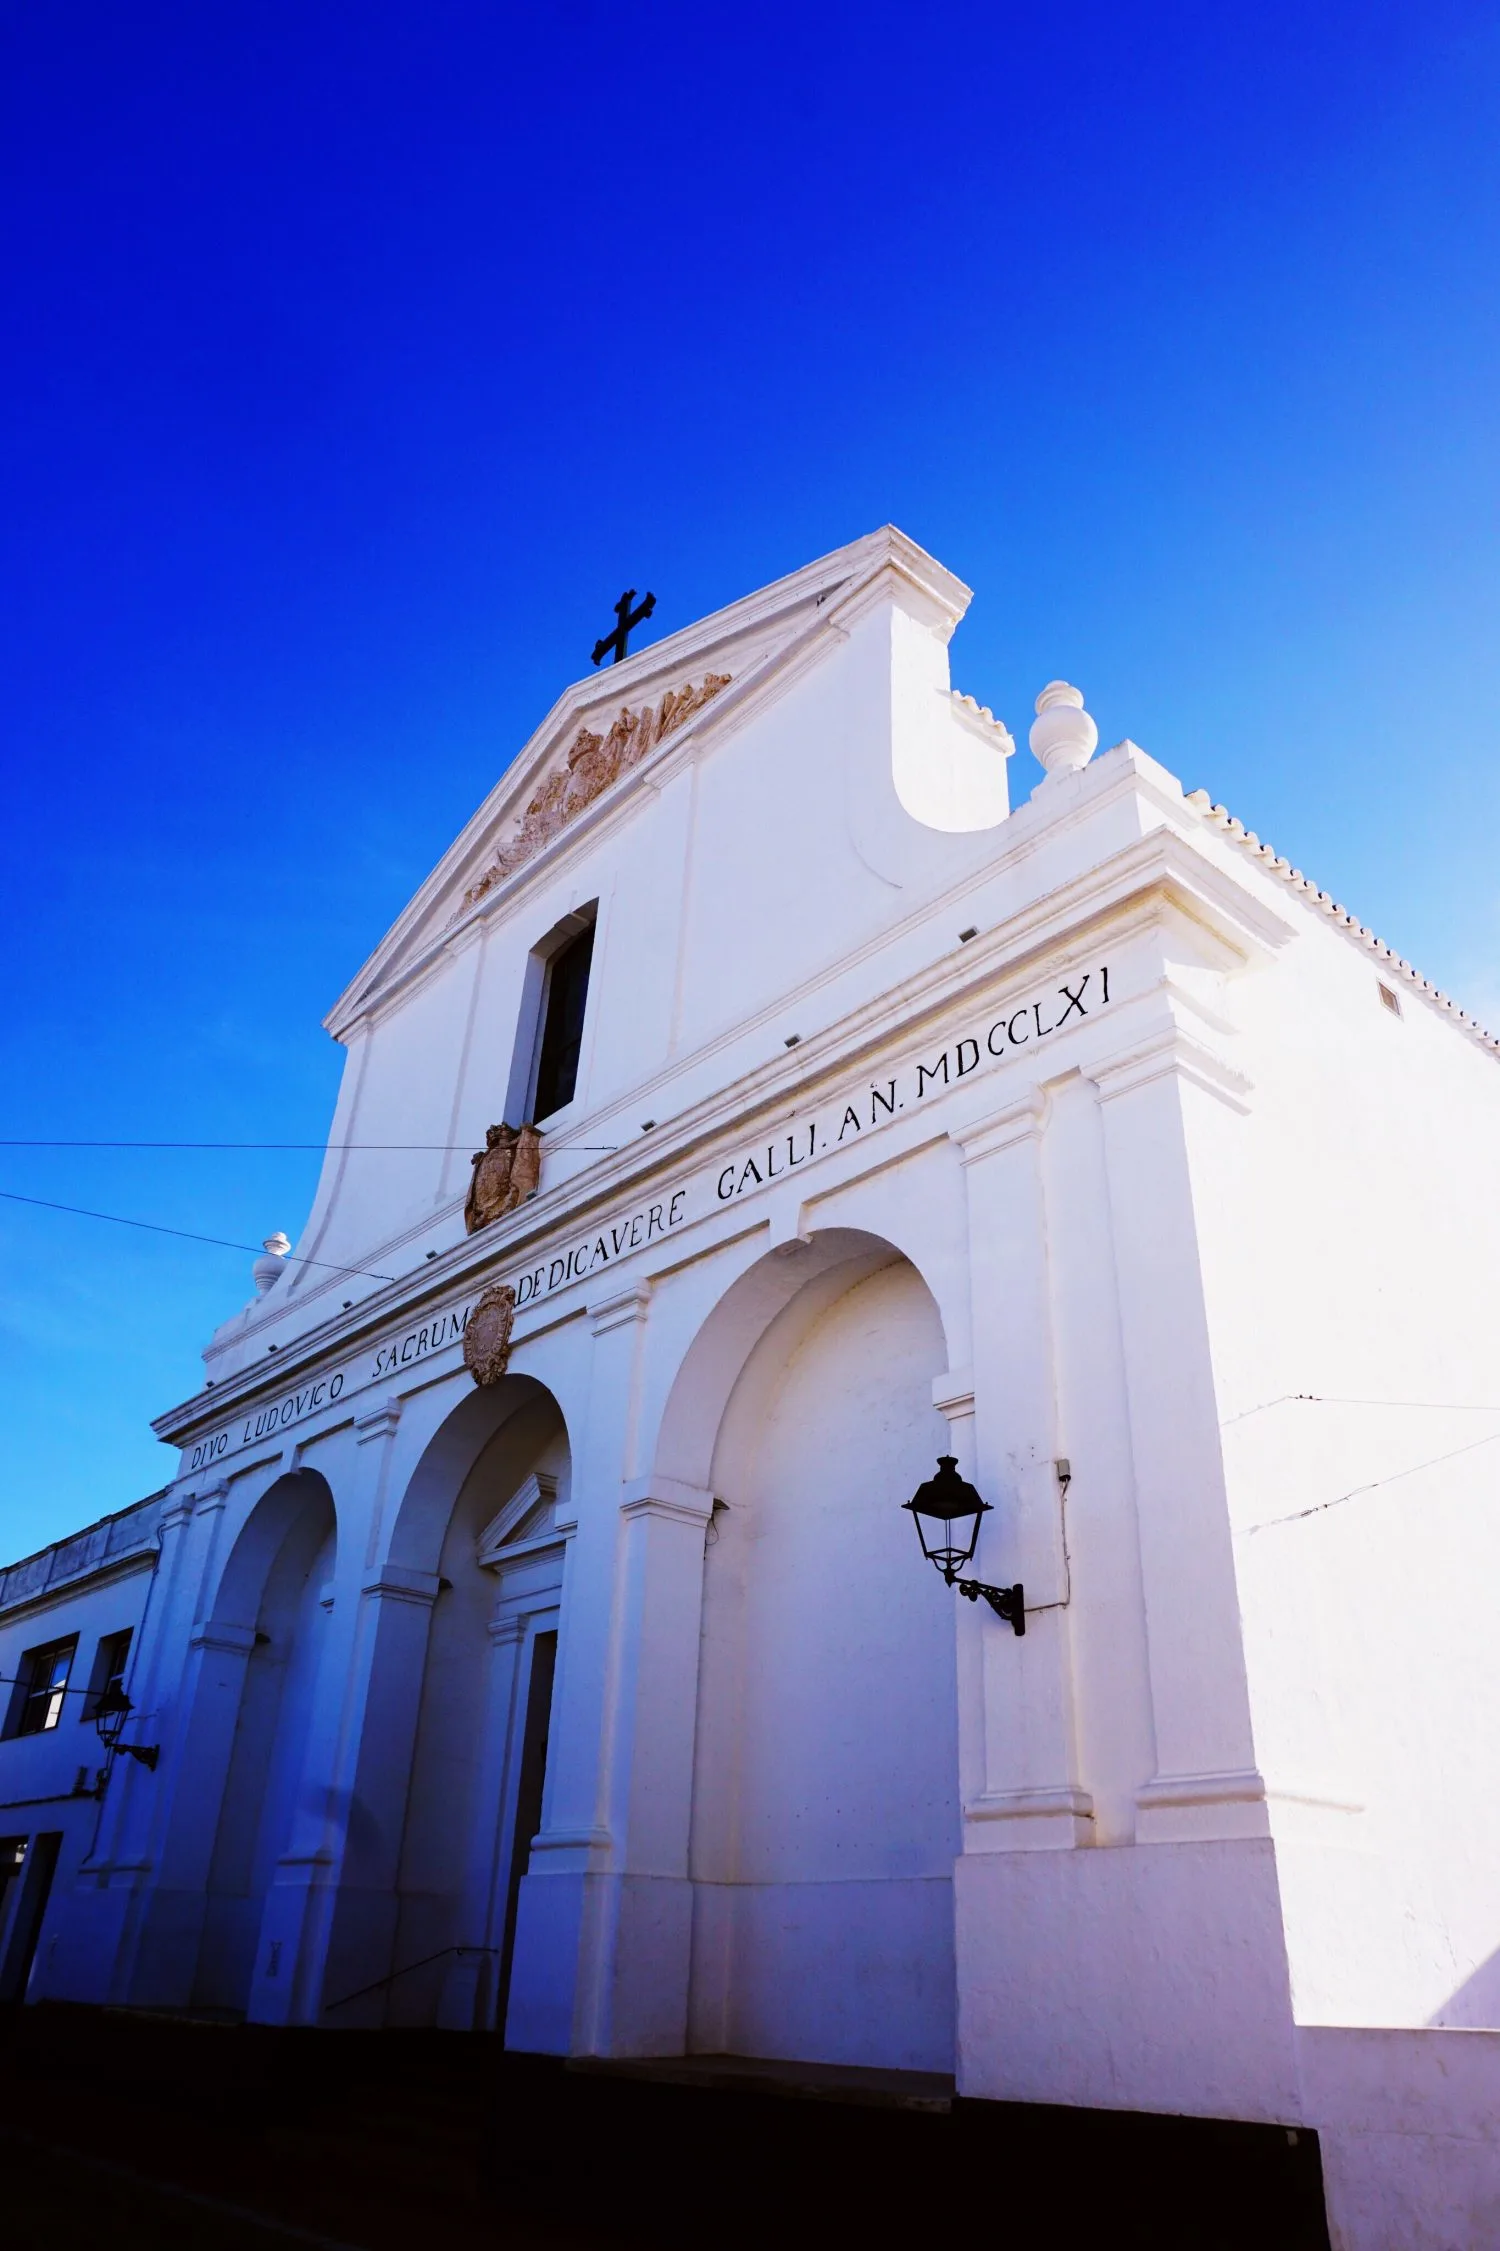 Church Sant Lluis Menorca